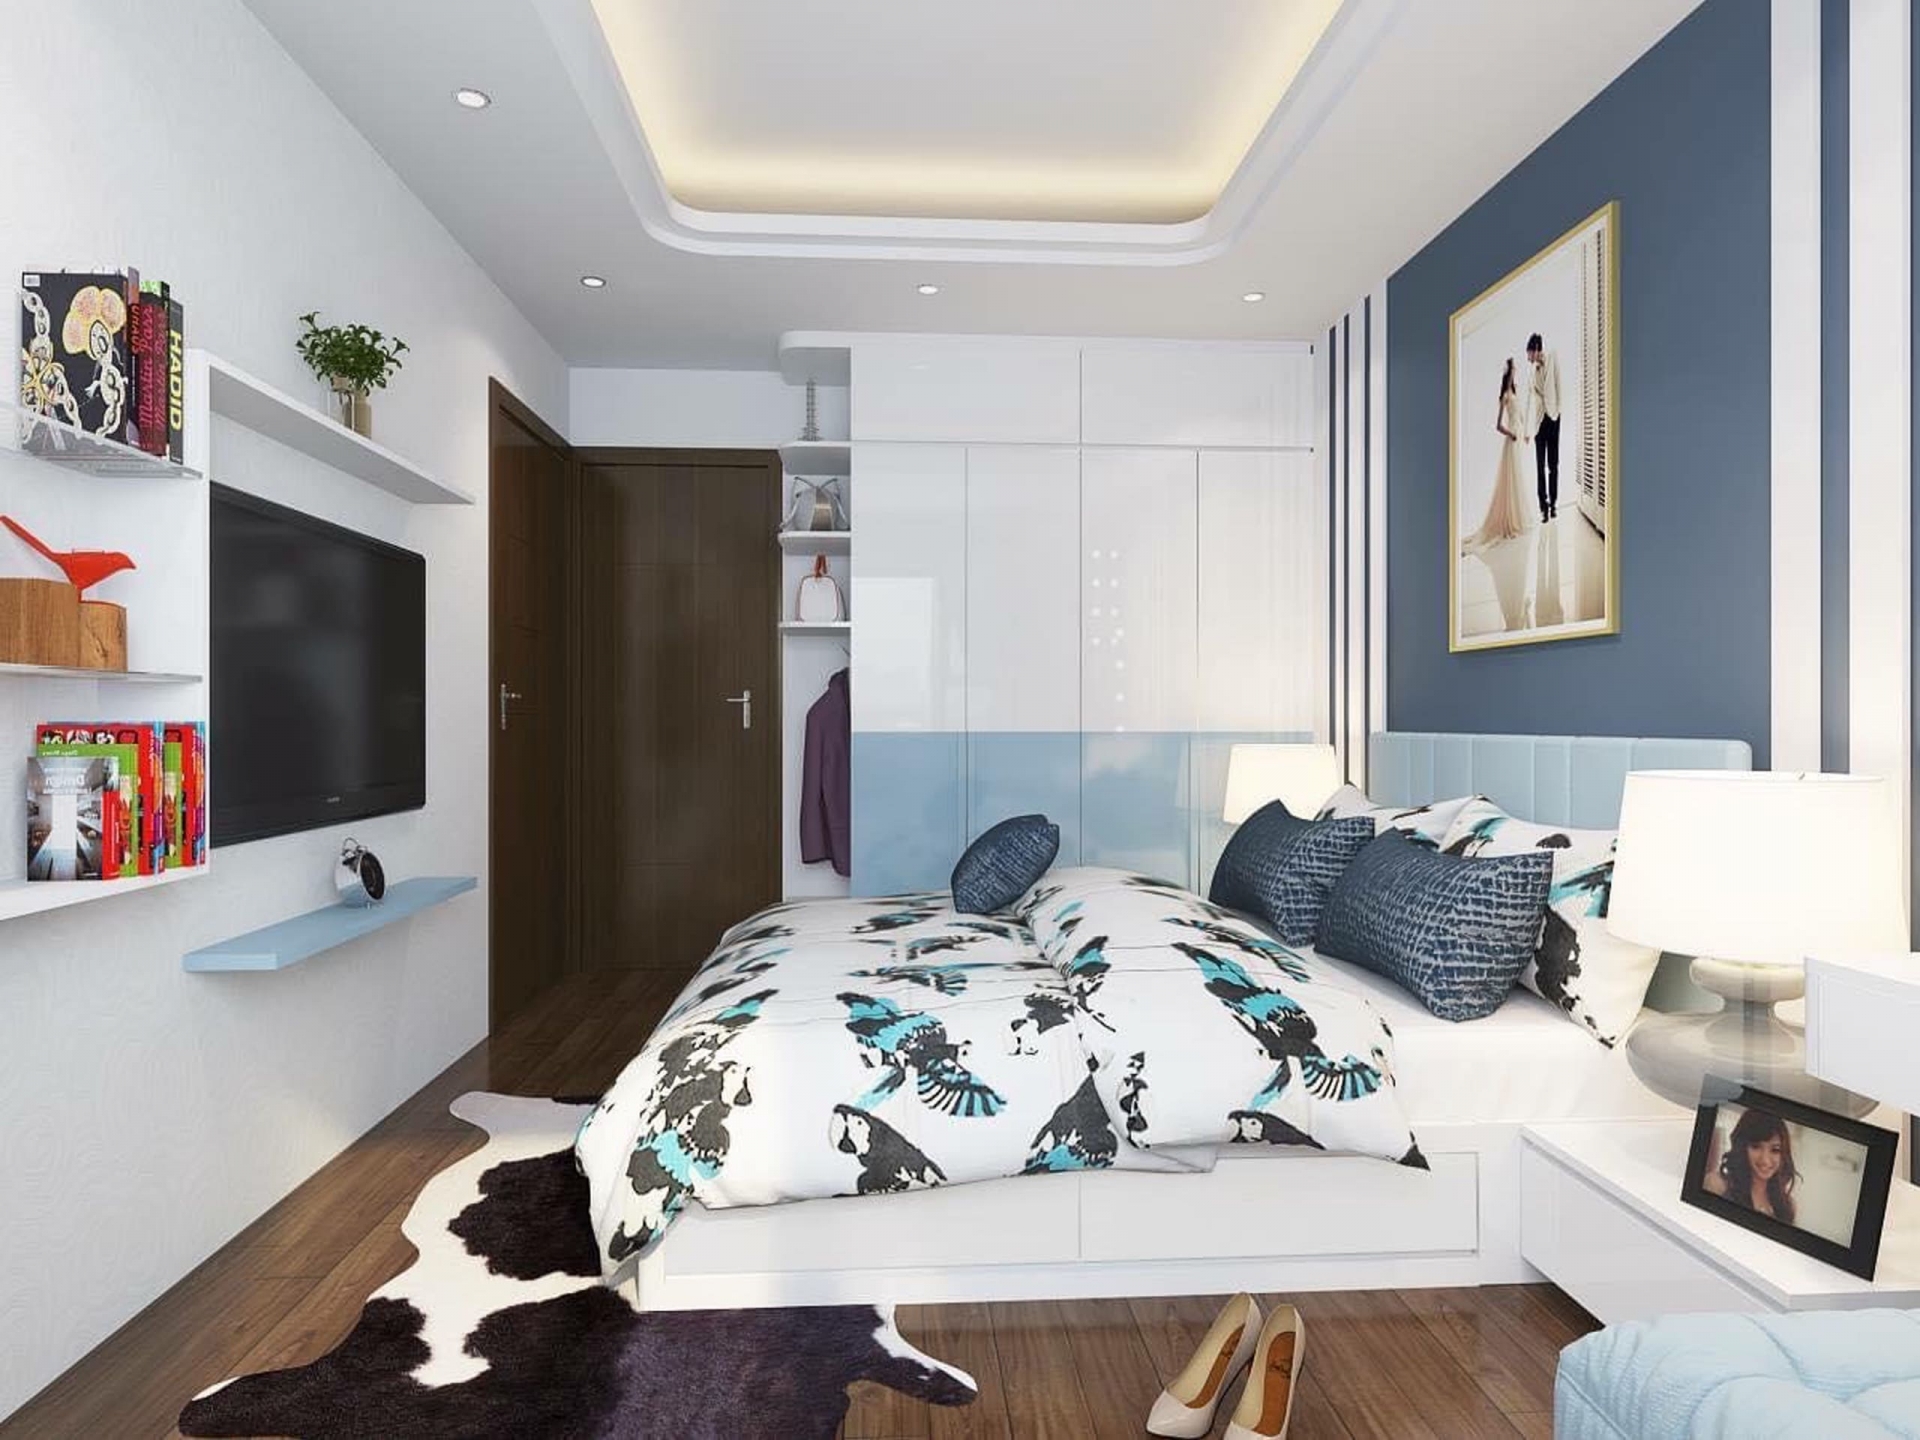 mẫu thiết kế nội thất phòng ngủ hiện đại cho căn hộ chung cư